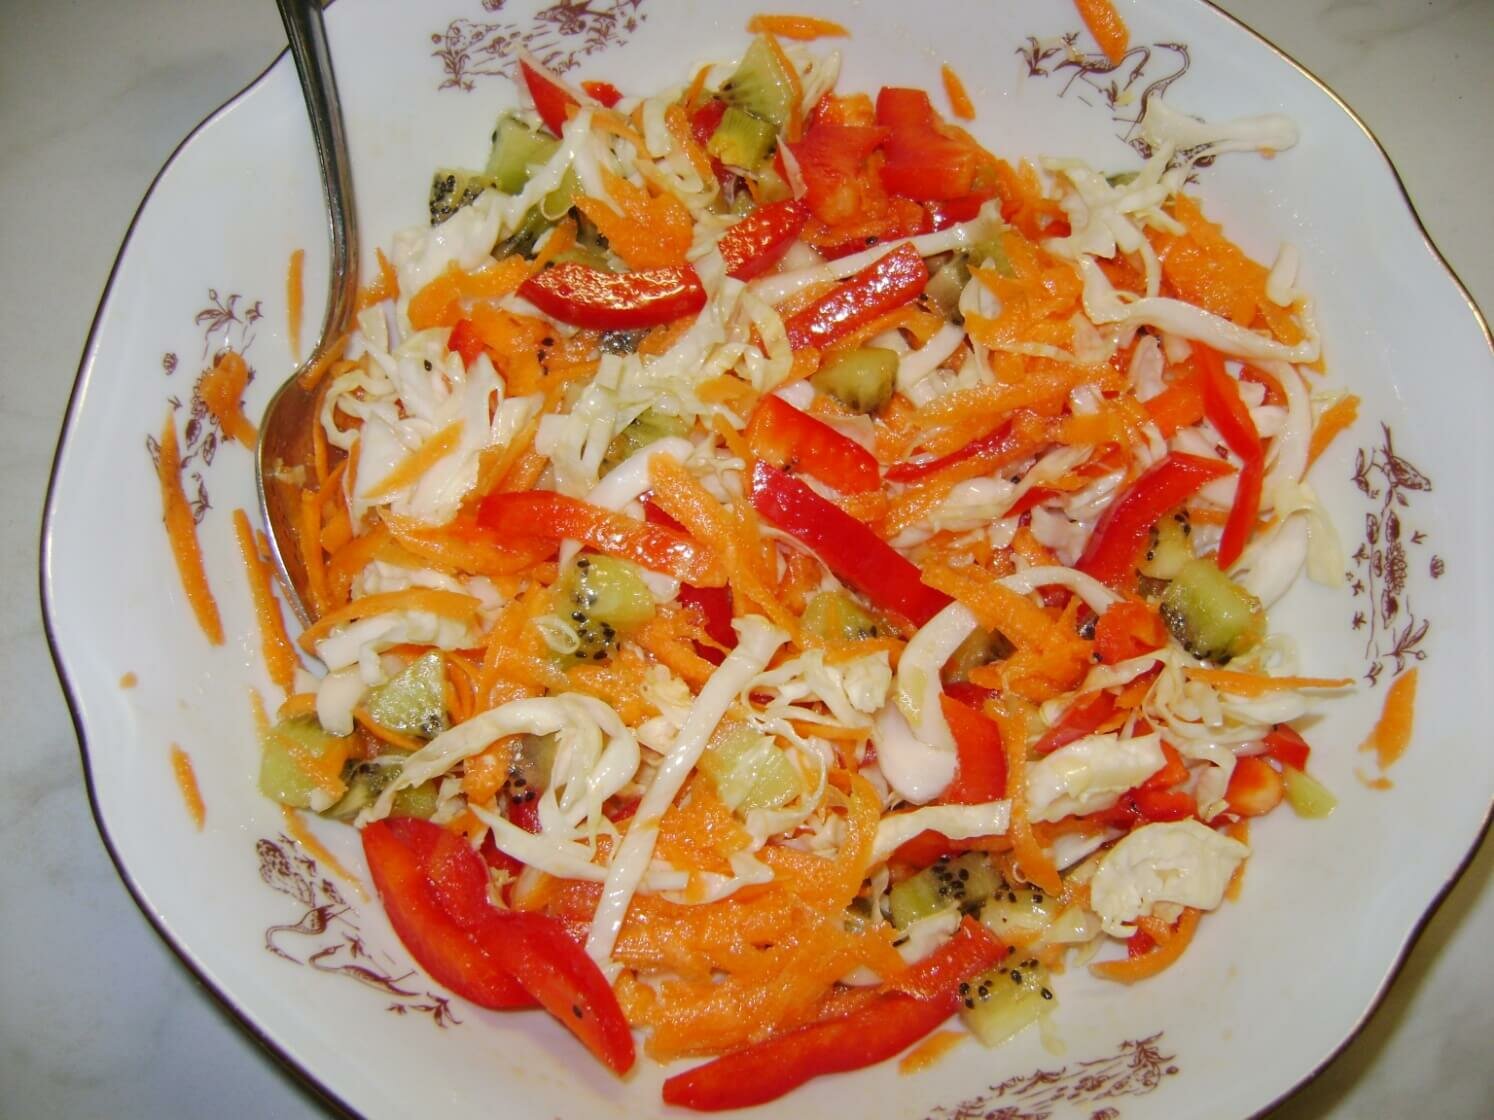 Овощной салат из капусты, болгарского перца, моркови и киви (11 шаг)